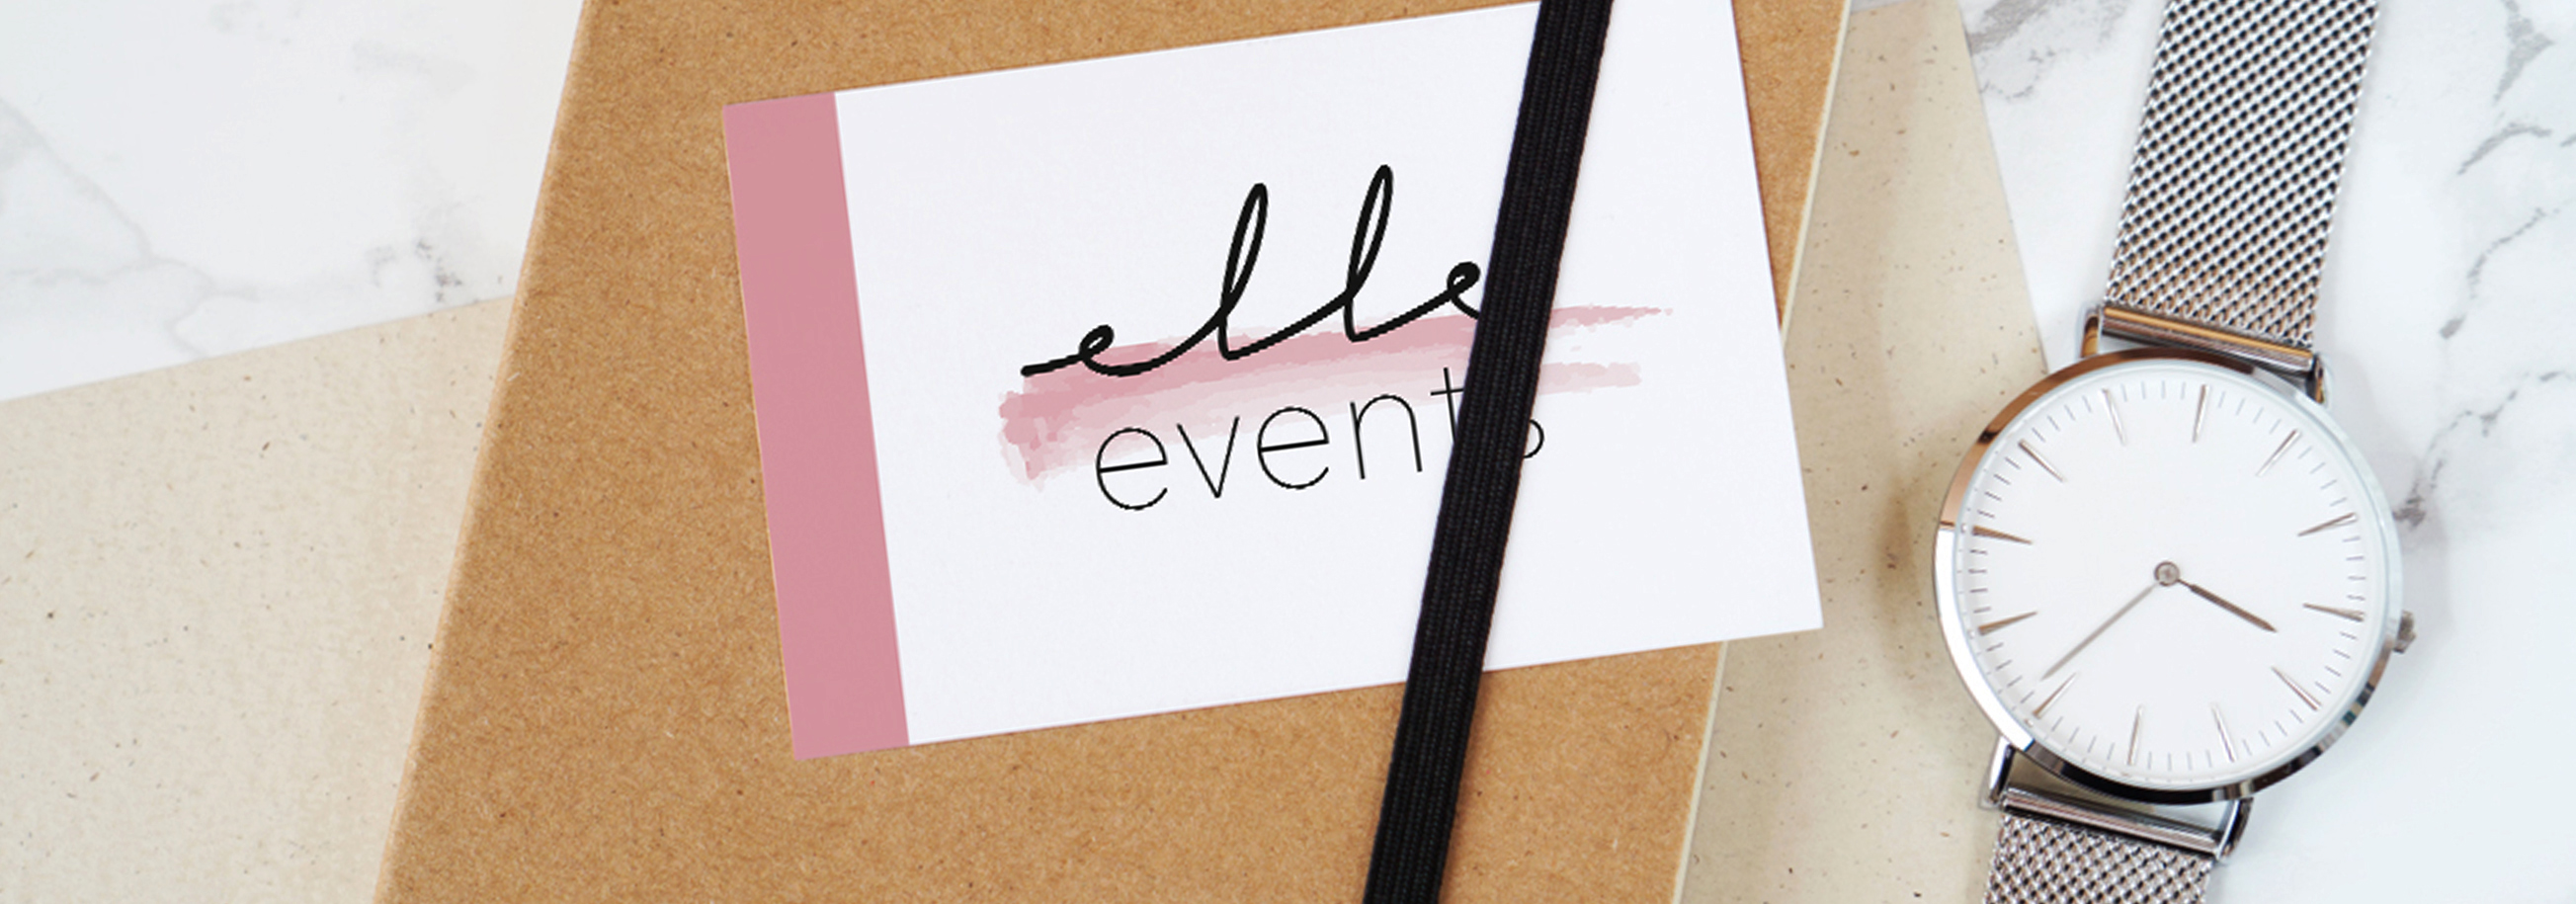 Contatta Elle Events - Gestione eventi e selezione del personale 